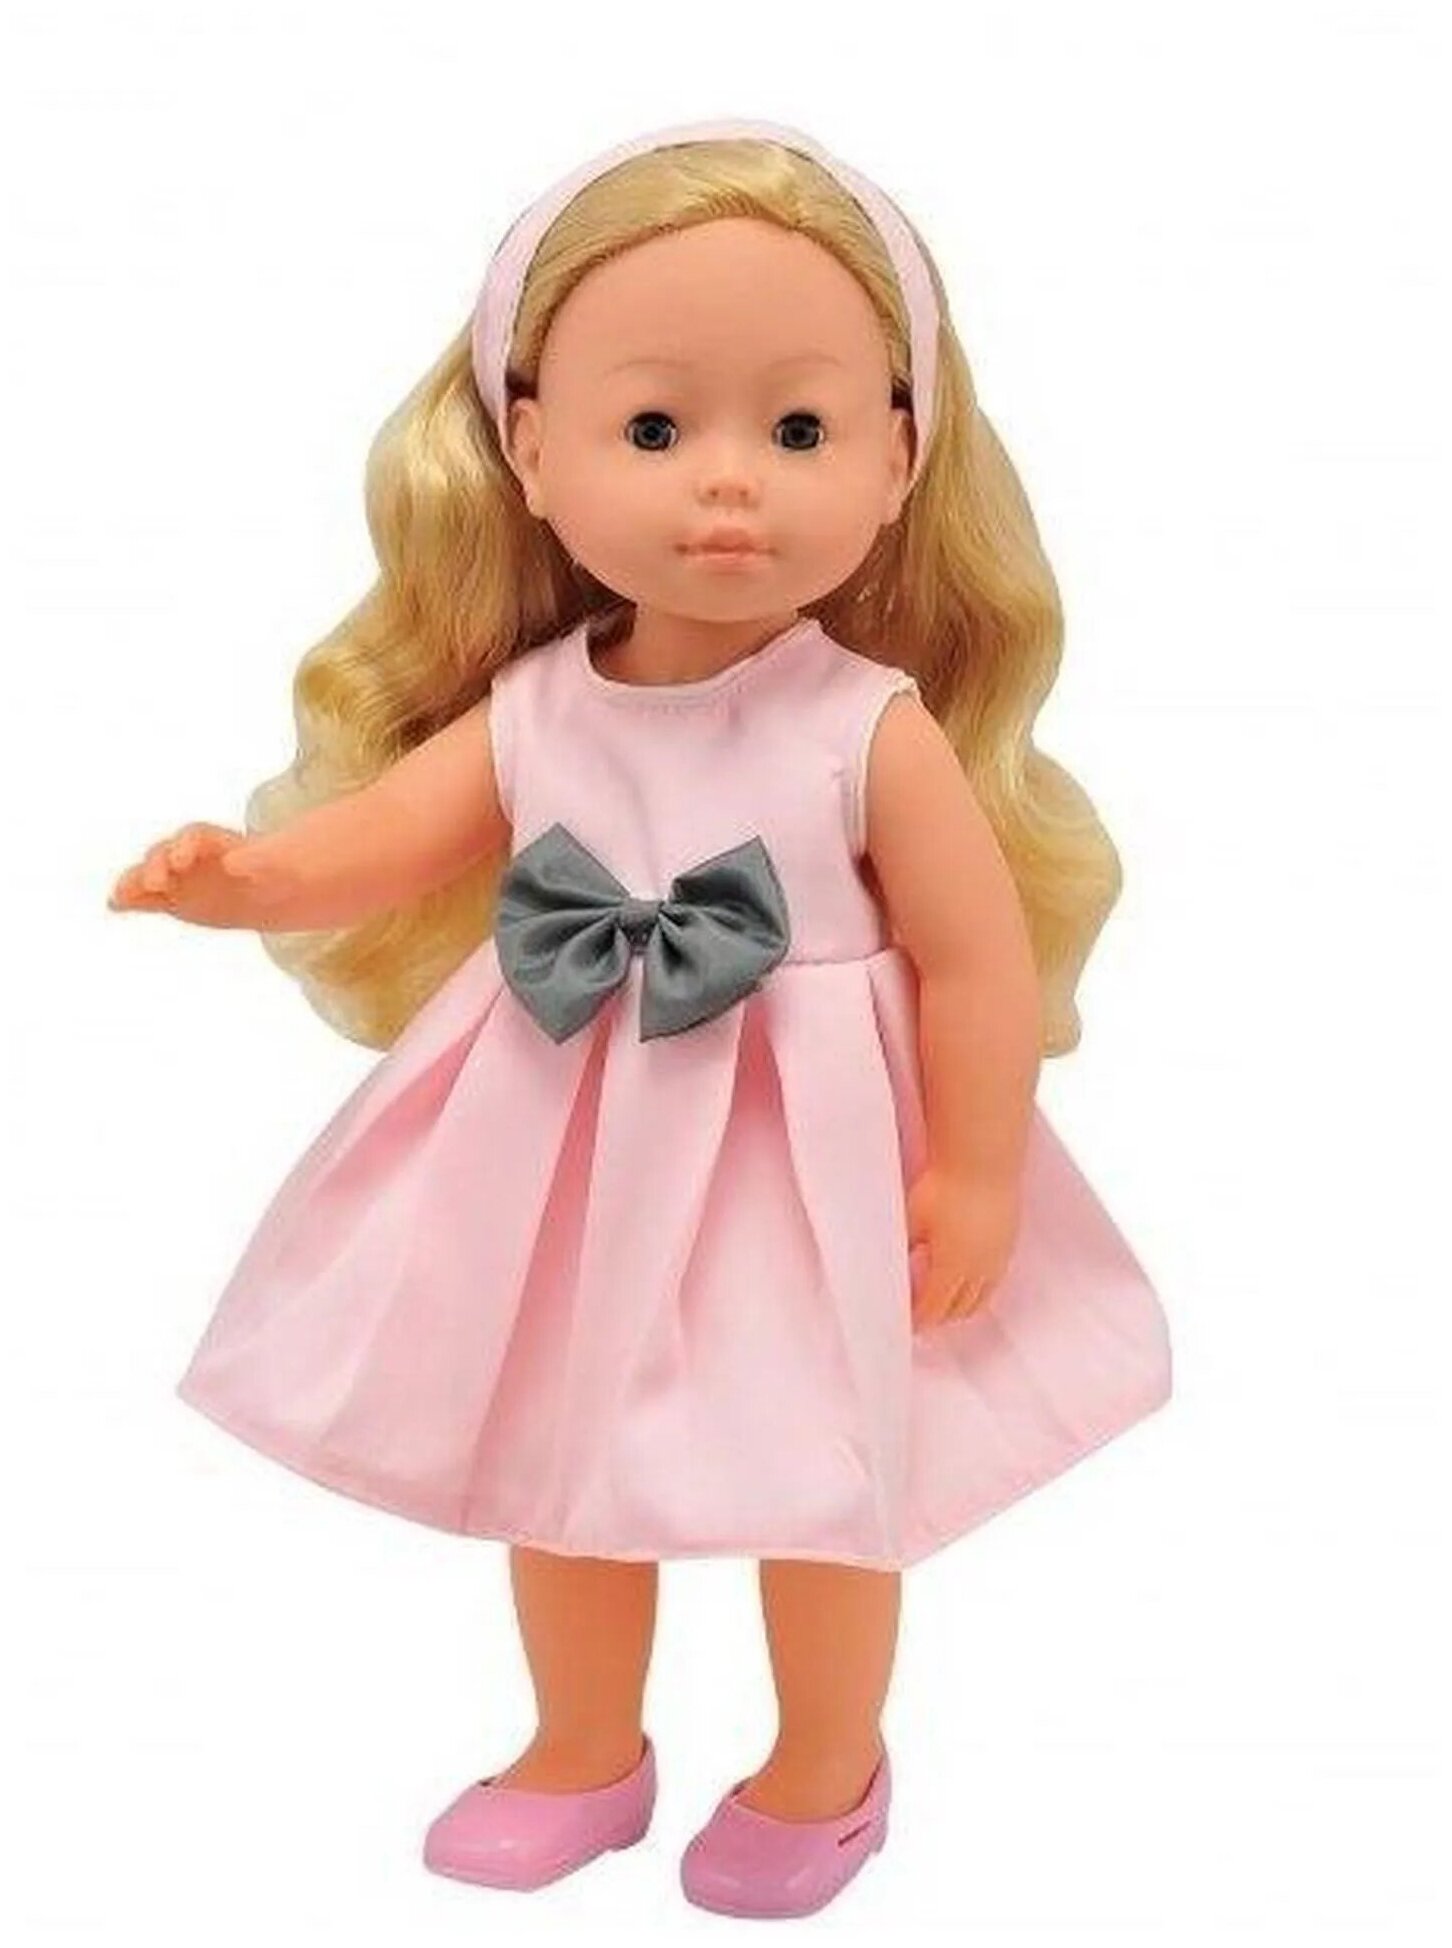 Кукла, тм Dimian, 40 см, розовое платье, изготовлена из Пвх, глаза закрываются,